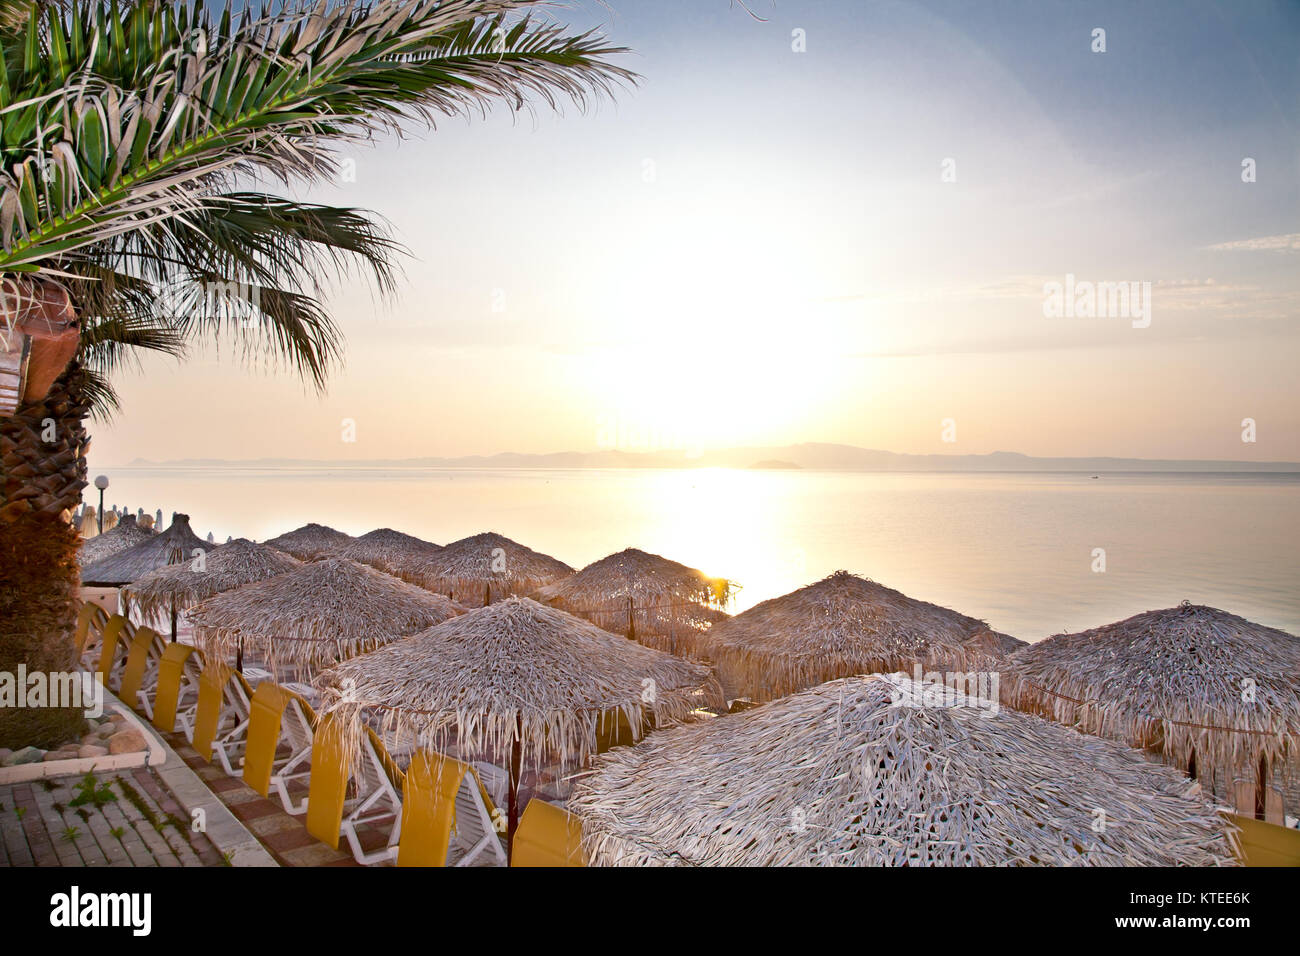 Beach umbrella on the beach at sunset, Hanioti, Greece. Stock Photo